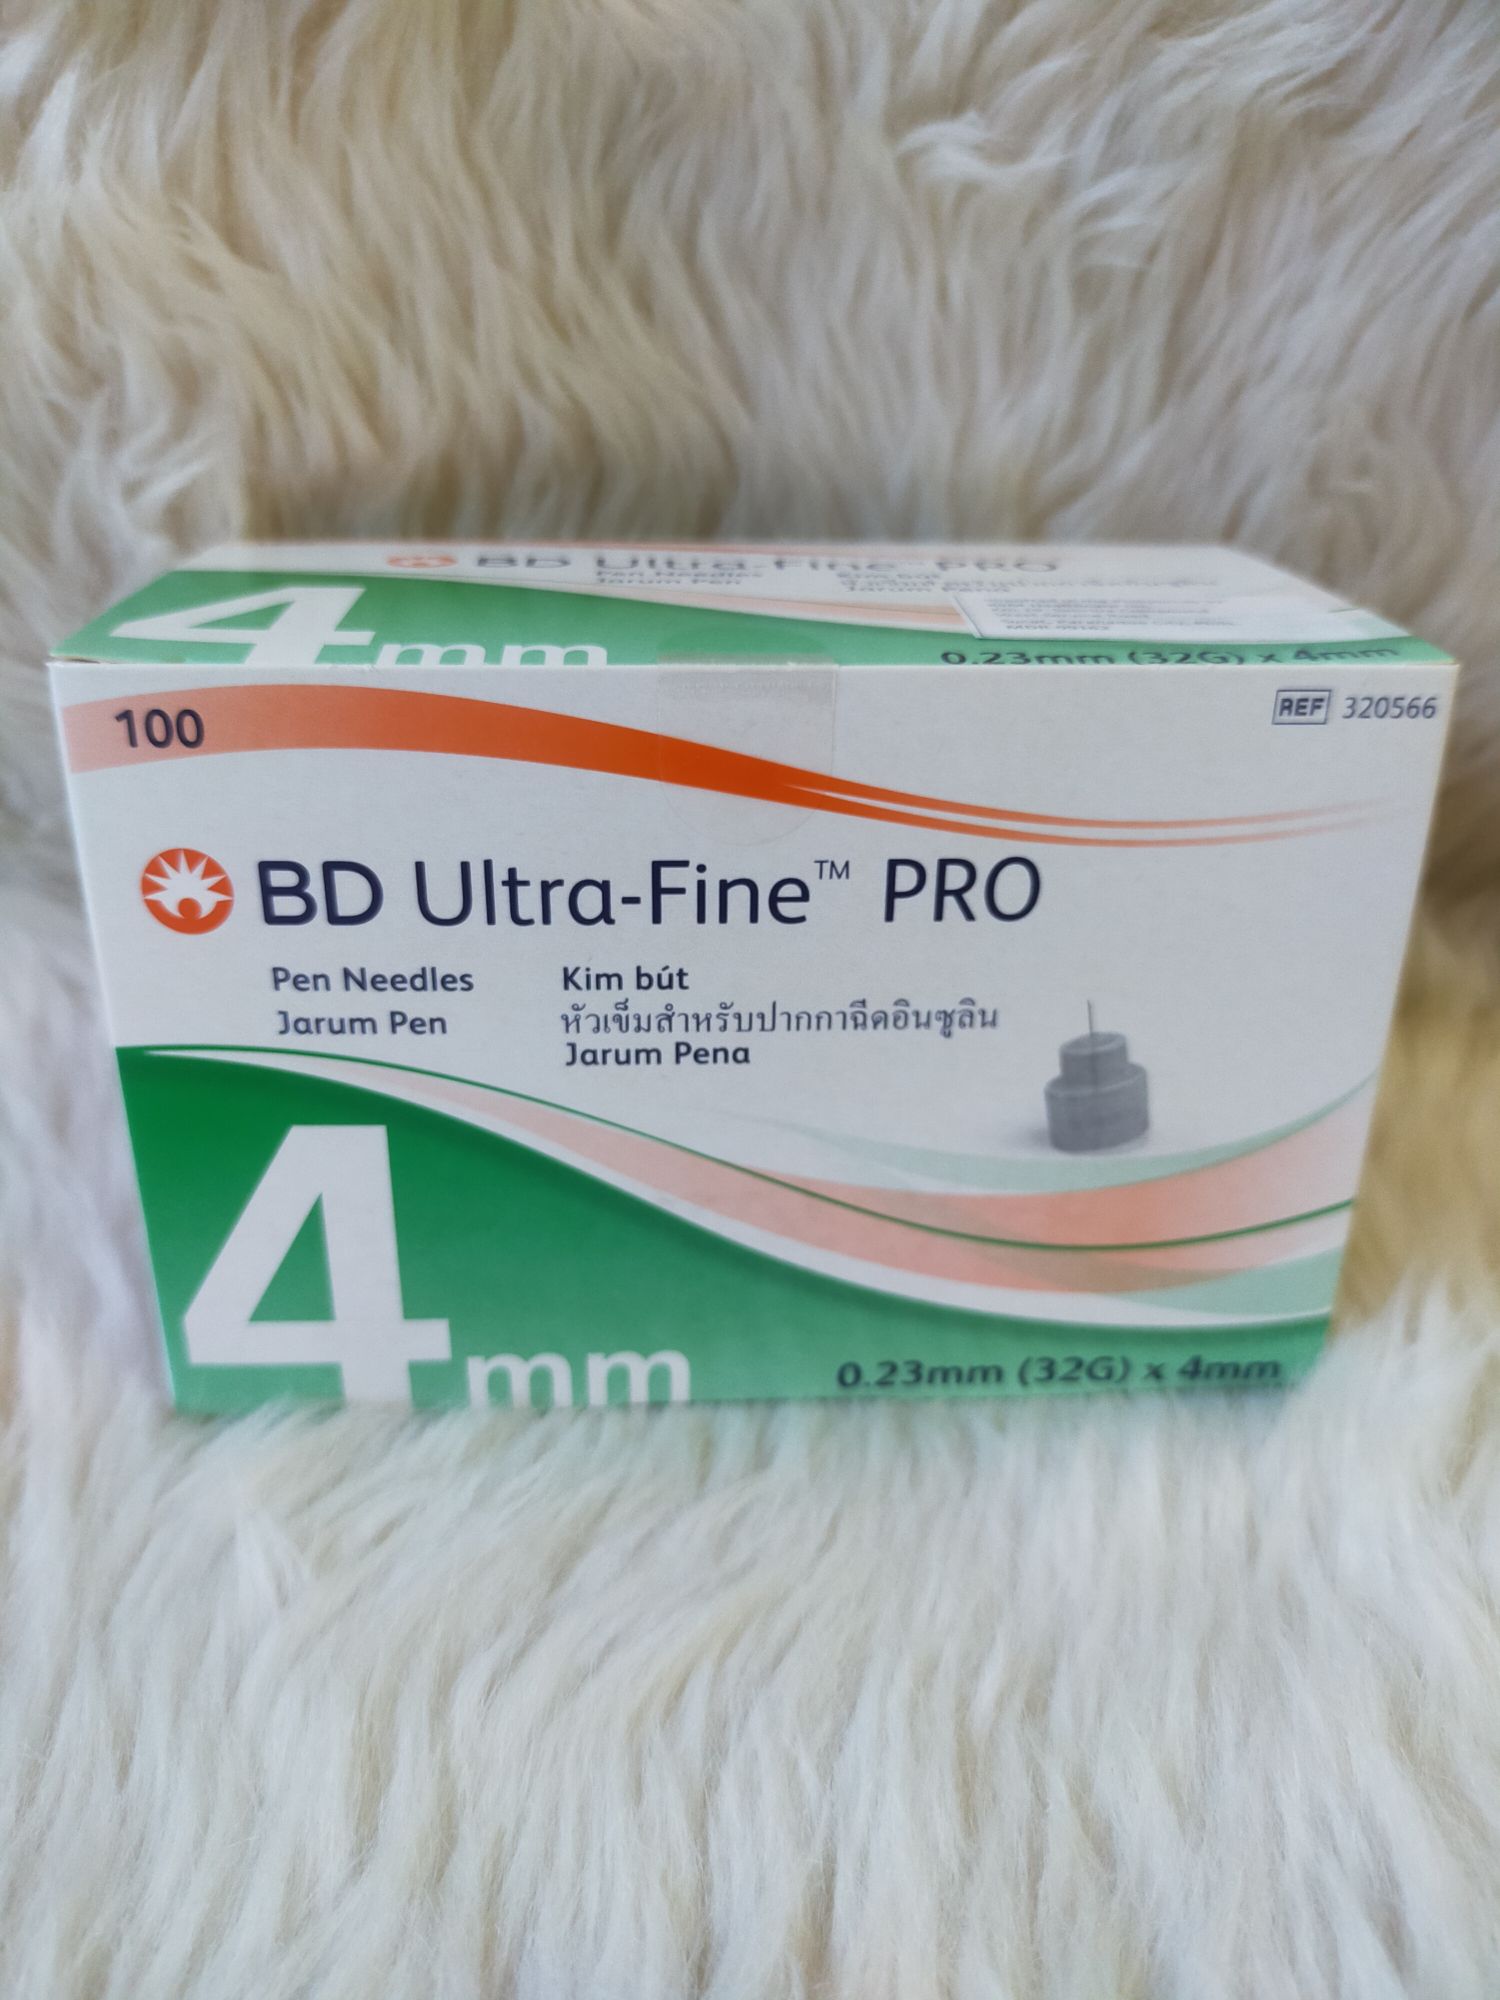 BD Ultra-Fine Pro 4mm Pen Needles